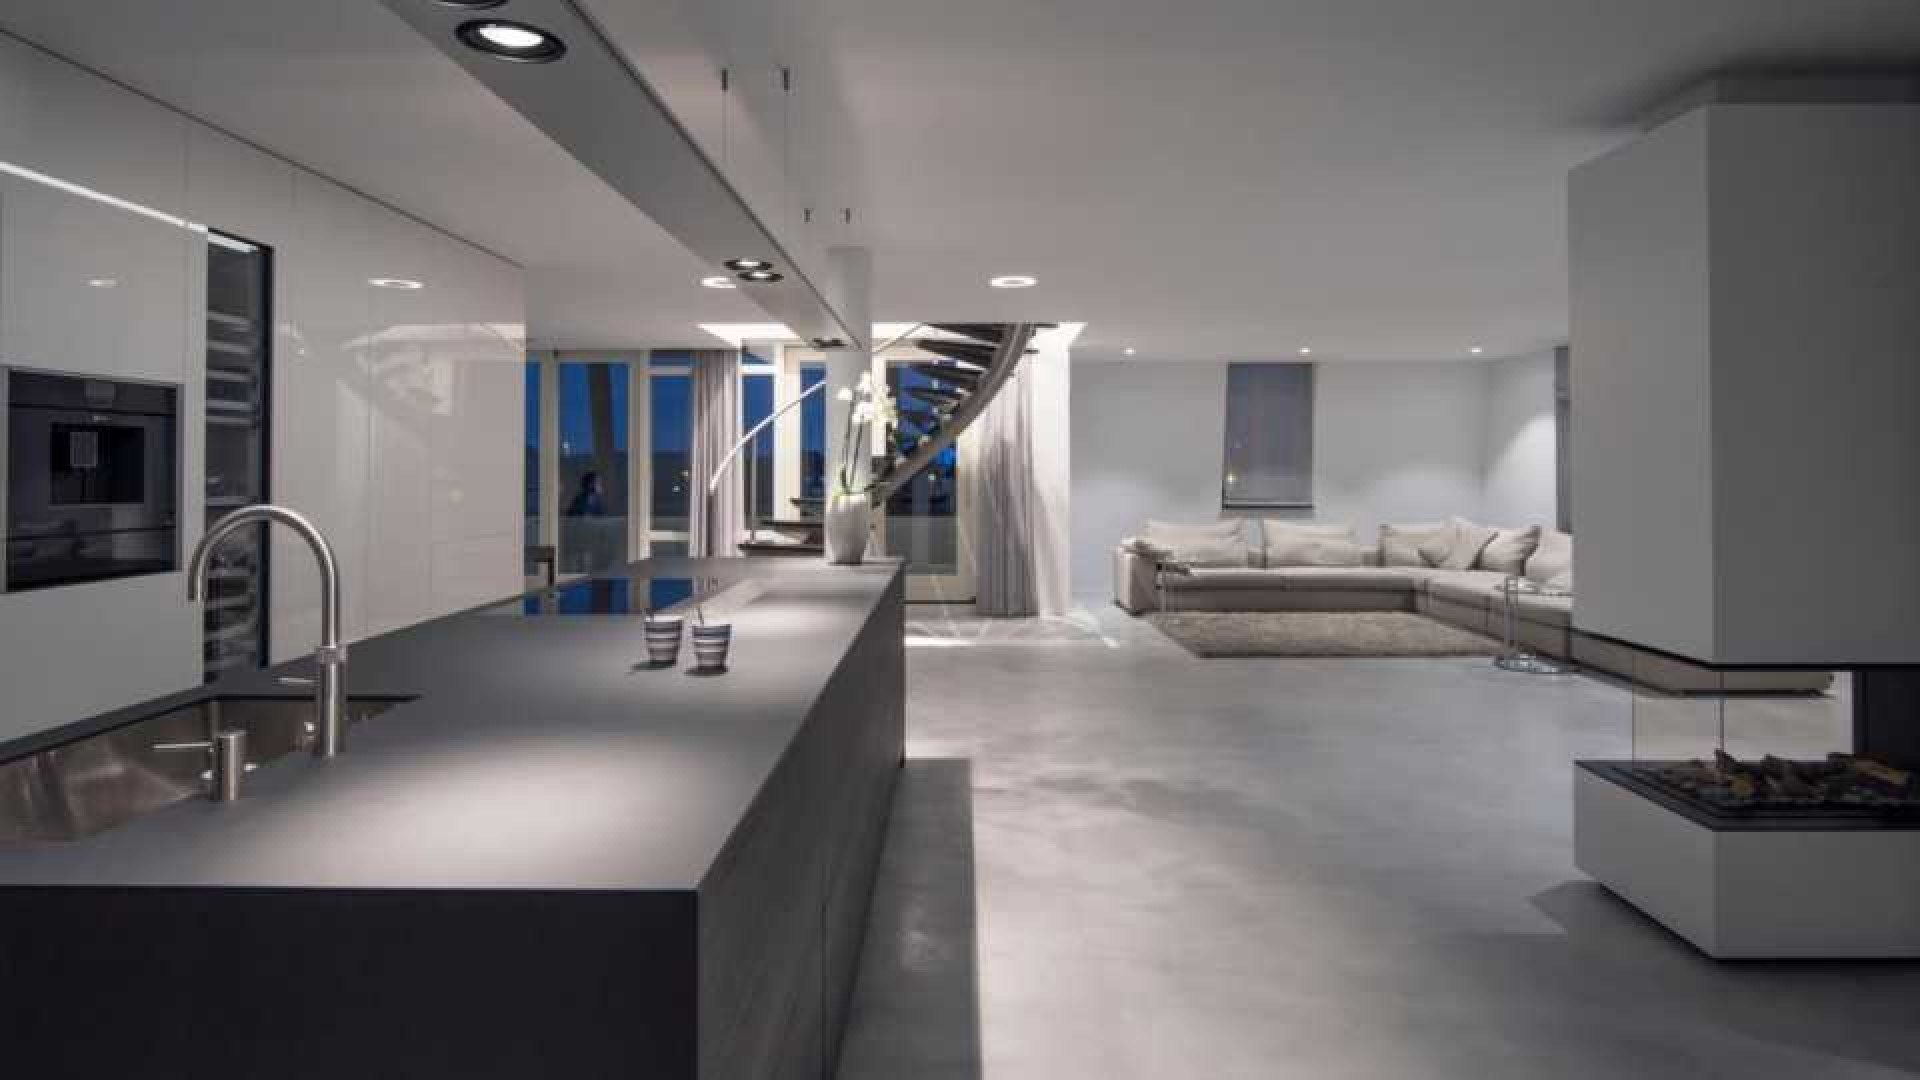 Binnenkijken in het waanzinnig luxe penthouse van Nederlands Elftal speler Denzel Dumfries. Zie foto's 2